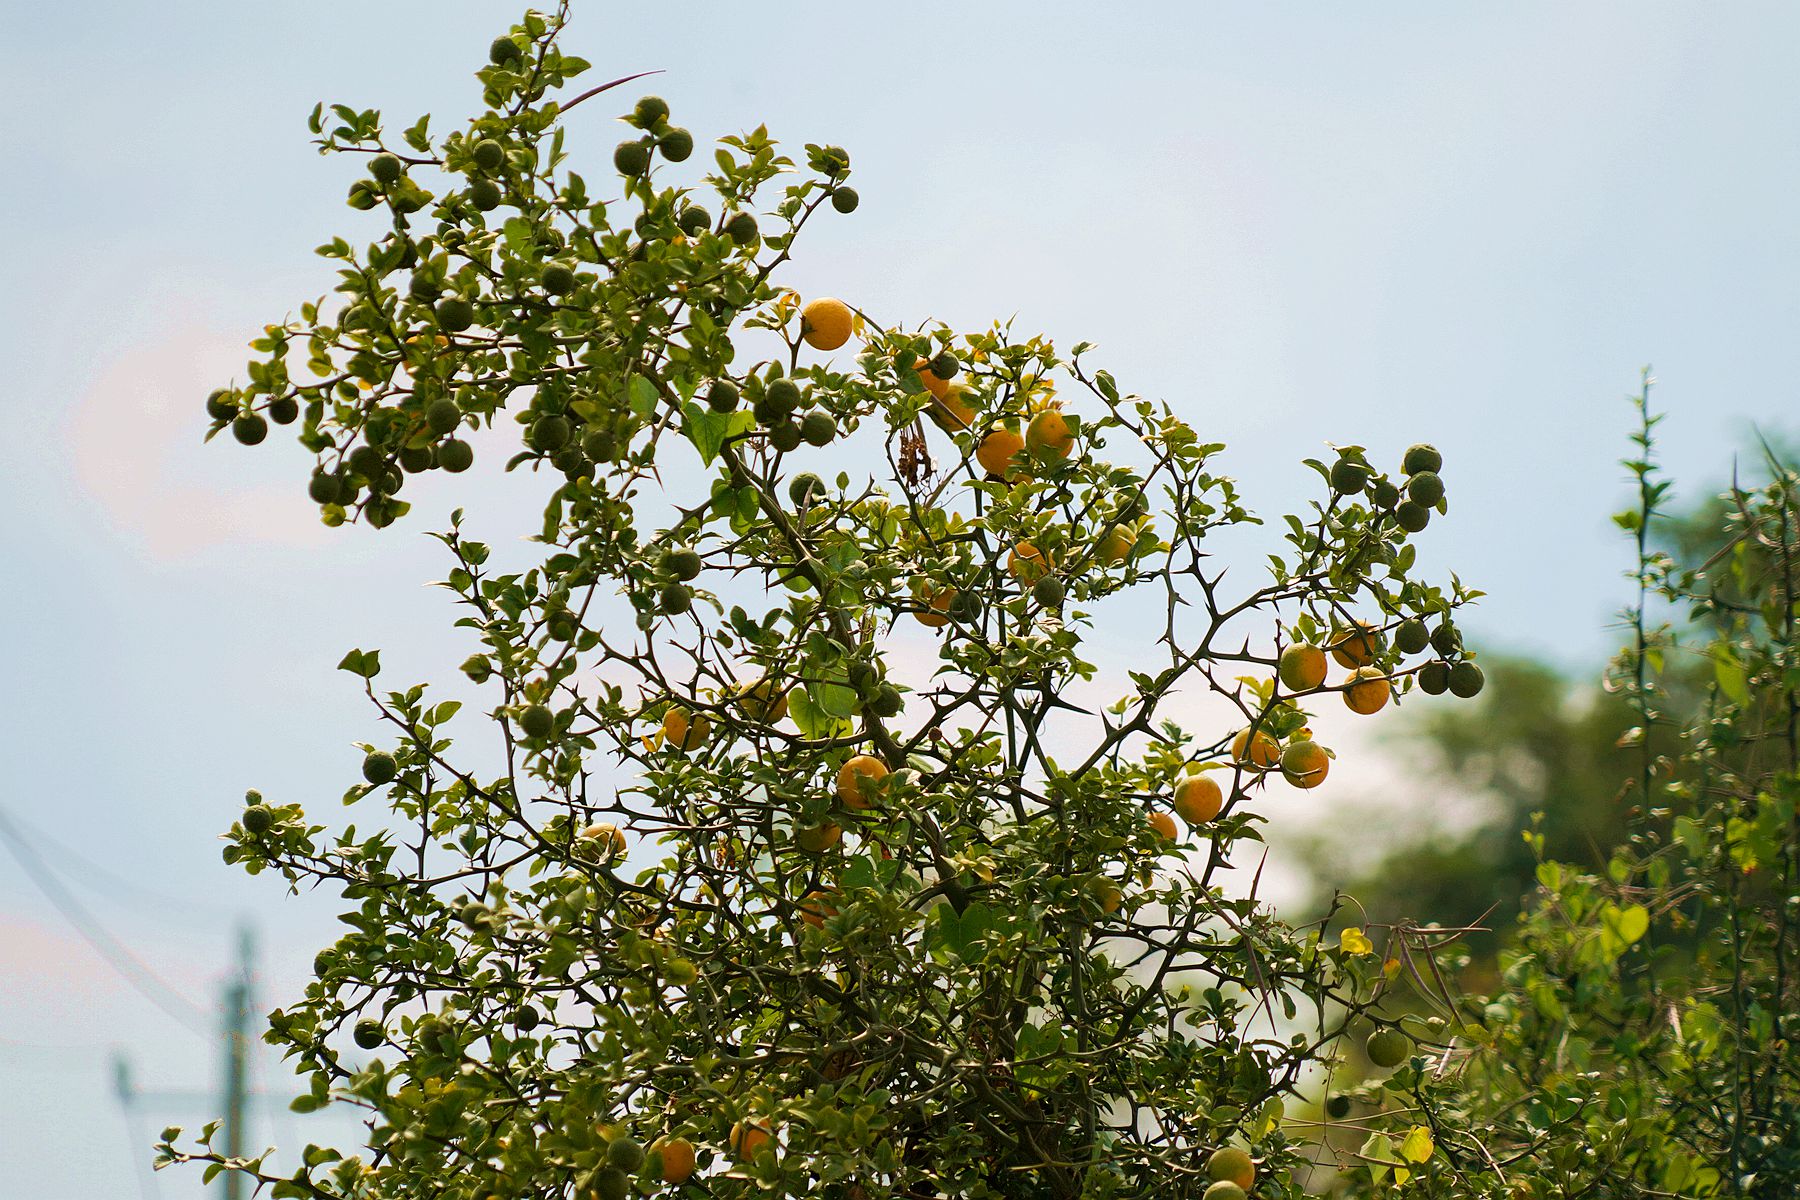 树梢的铁梨寨果实已经开始成熟了,发青的还是占大多数,有一部分变黄